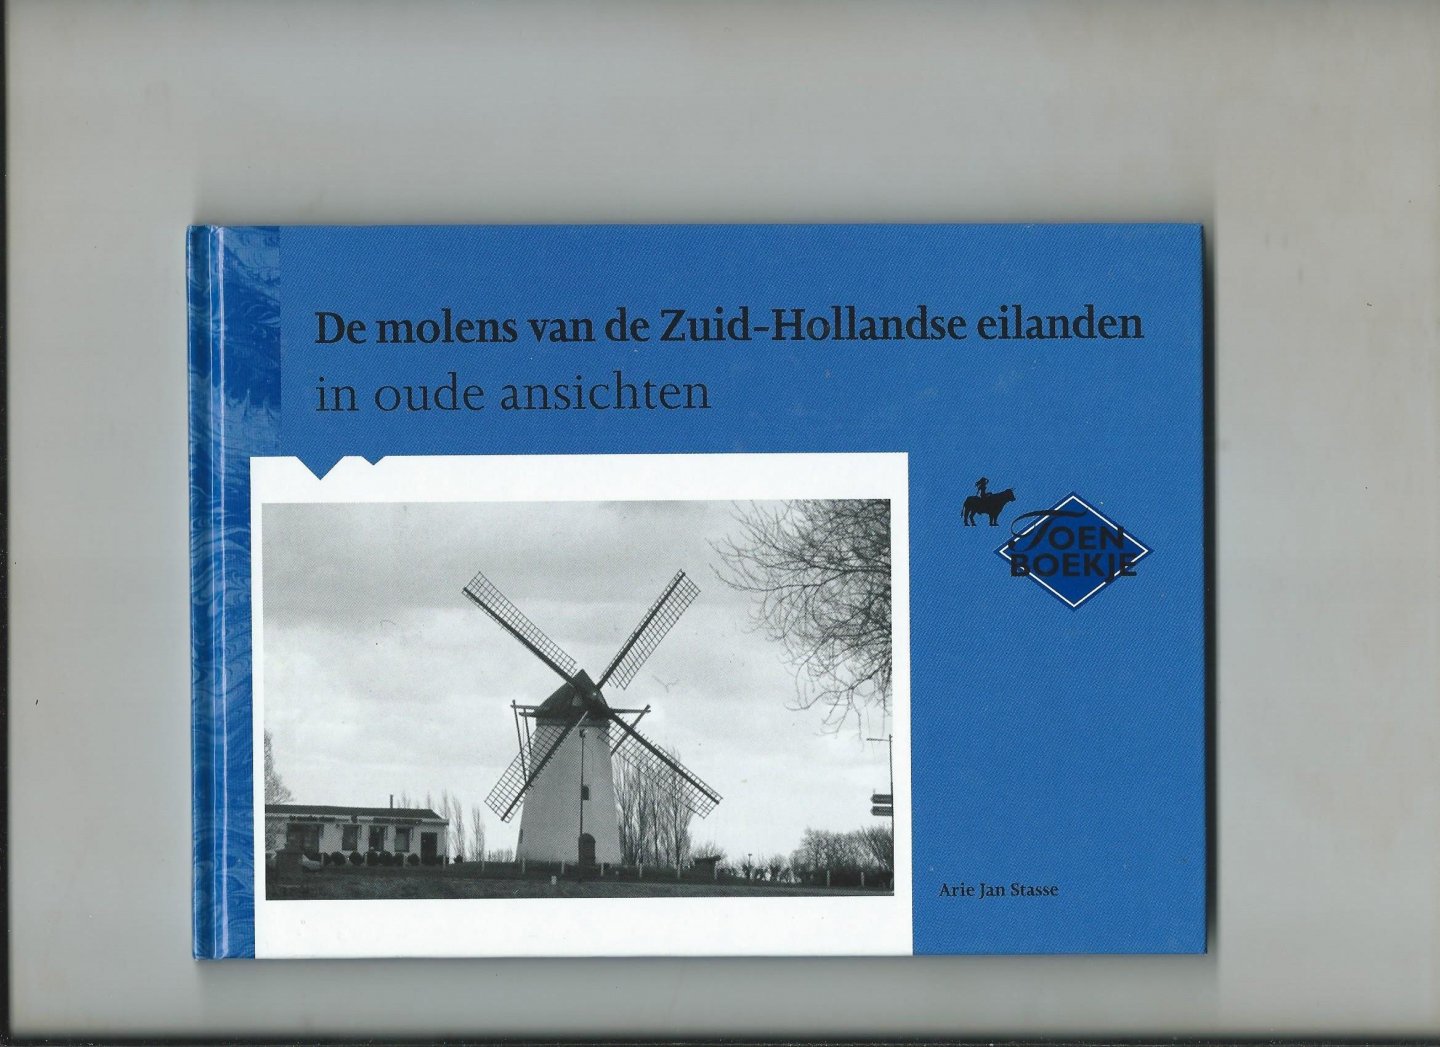 Stasse, Arie Jan - De molens van de Zuid-Hollandse eilanden in oude ansichten.